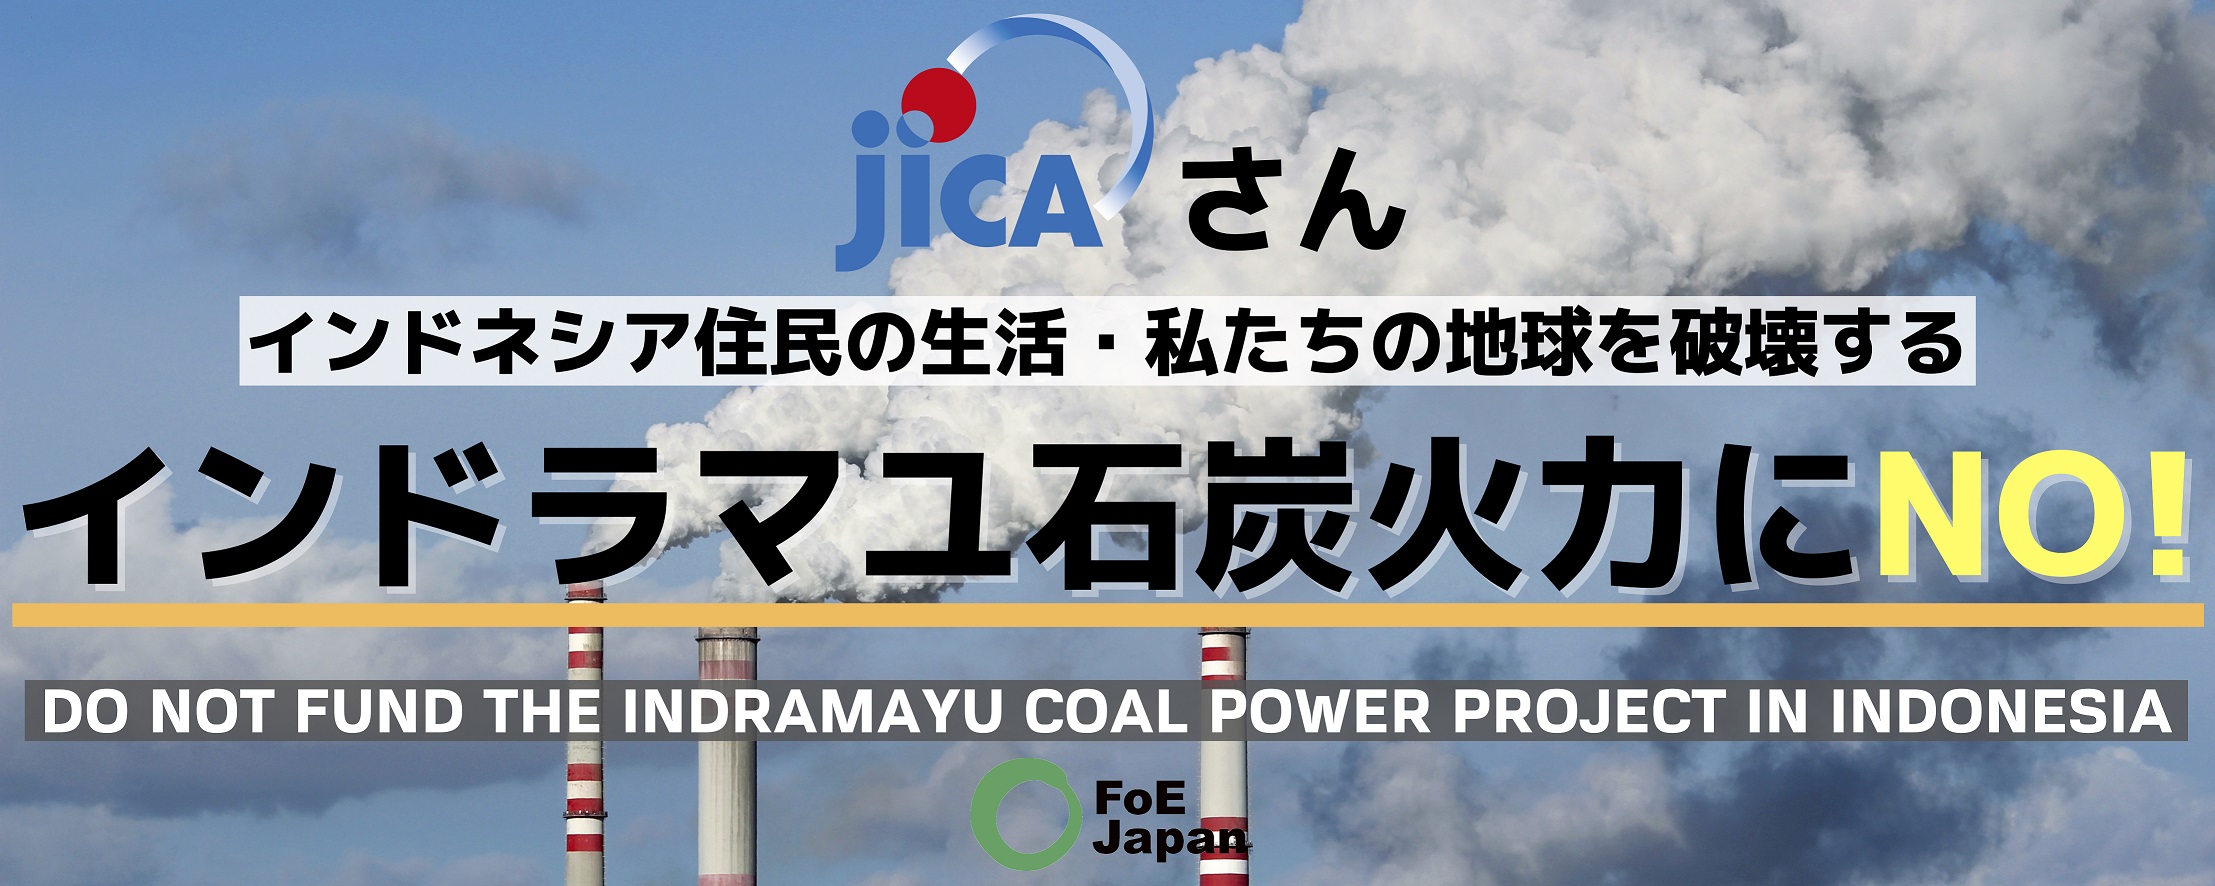 プレスリリース Oda案件インドラマユ石炭火力にno 日 インドネシア両首脳に中止を求める要請書を提出 No Coal Go Green 日本の海外石炭融資にno